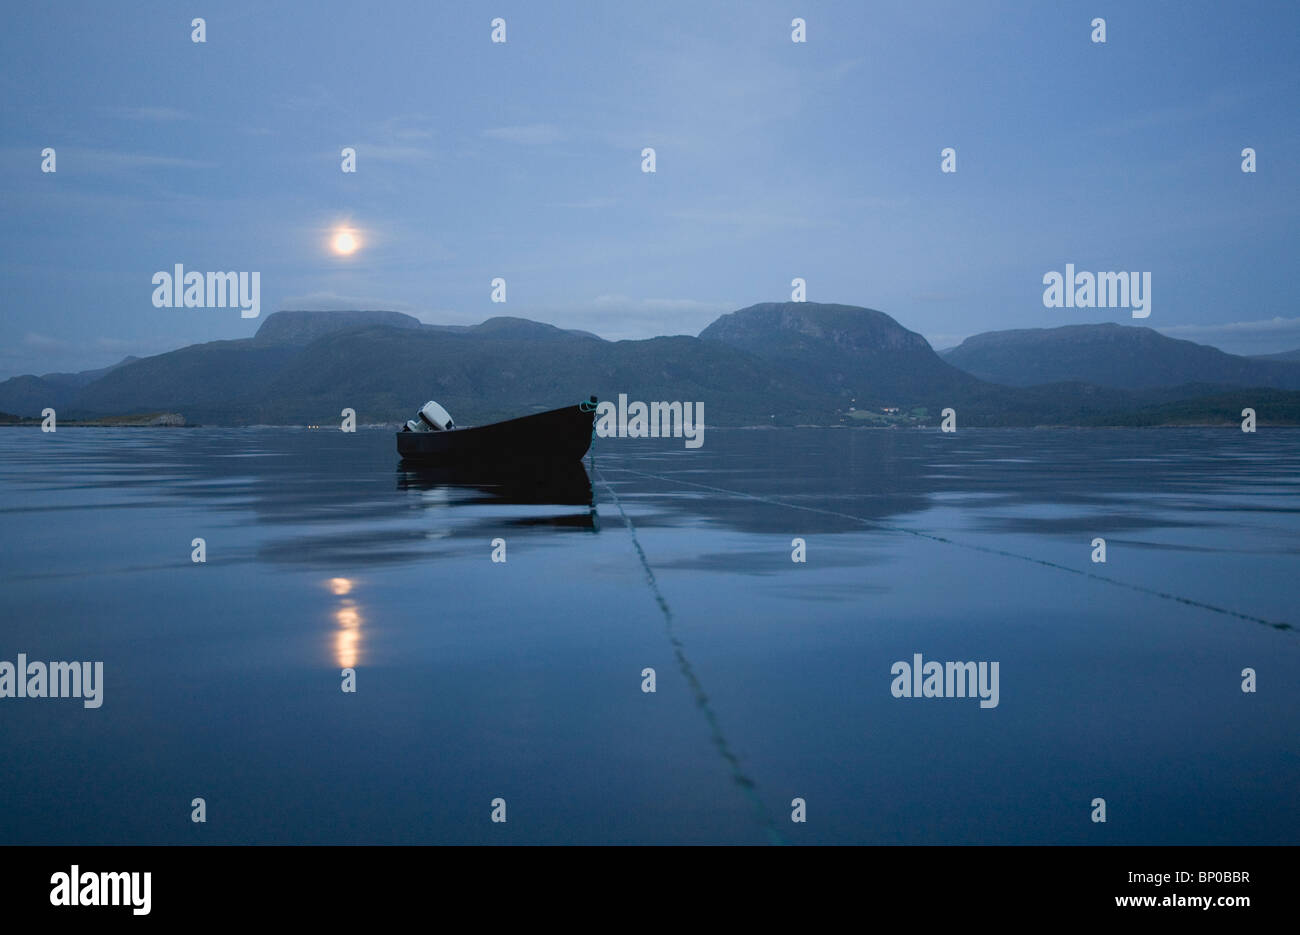 La barca di legno sul mare calmo di notte Foto Stock